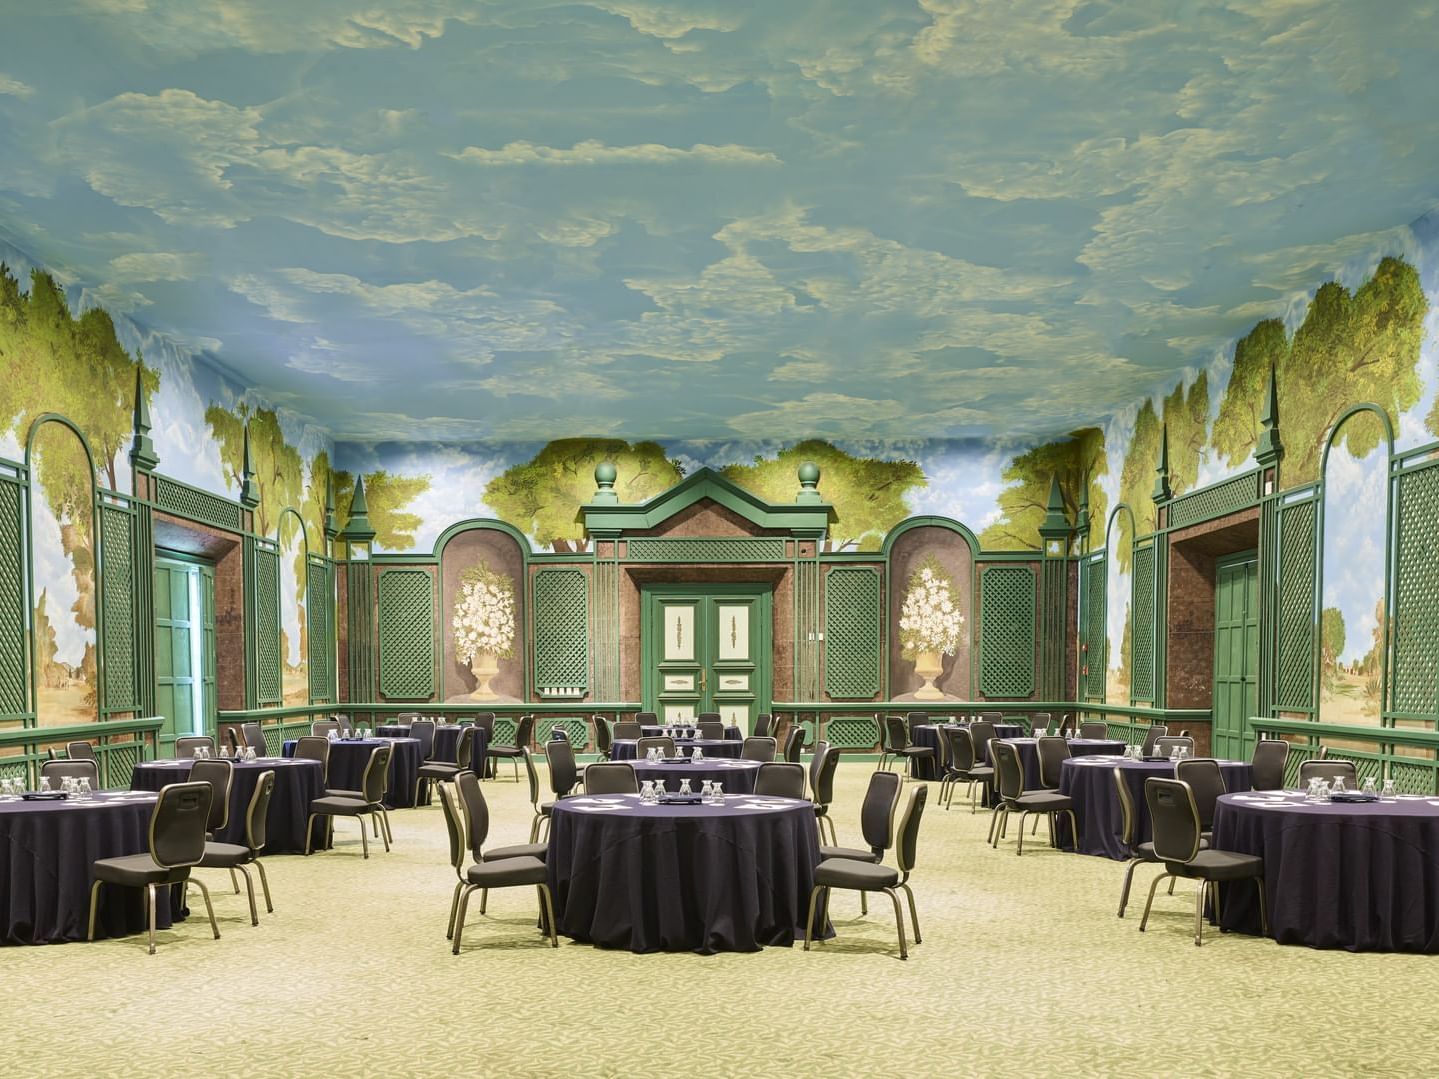 Banquet tables are arranged in a meeting room at La Colección